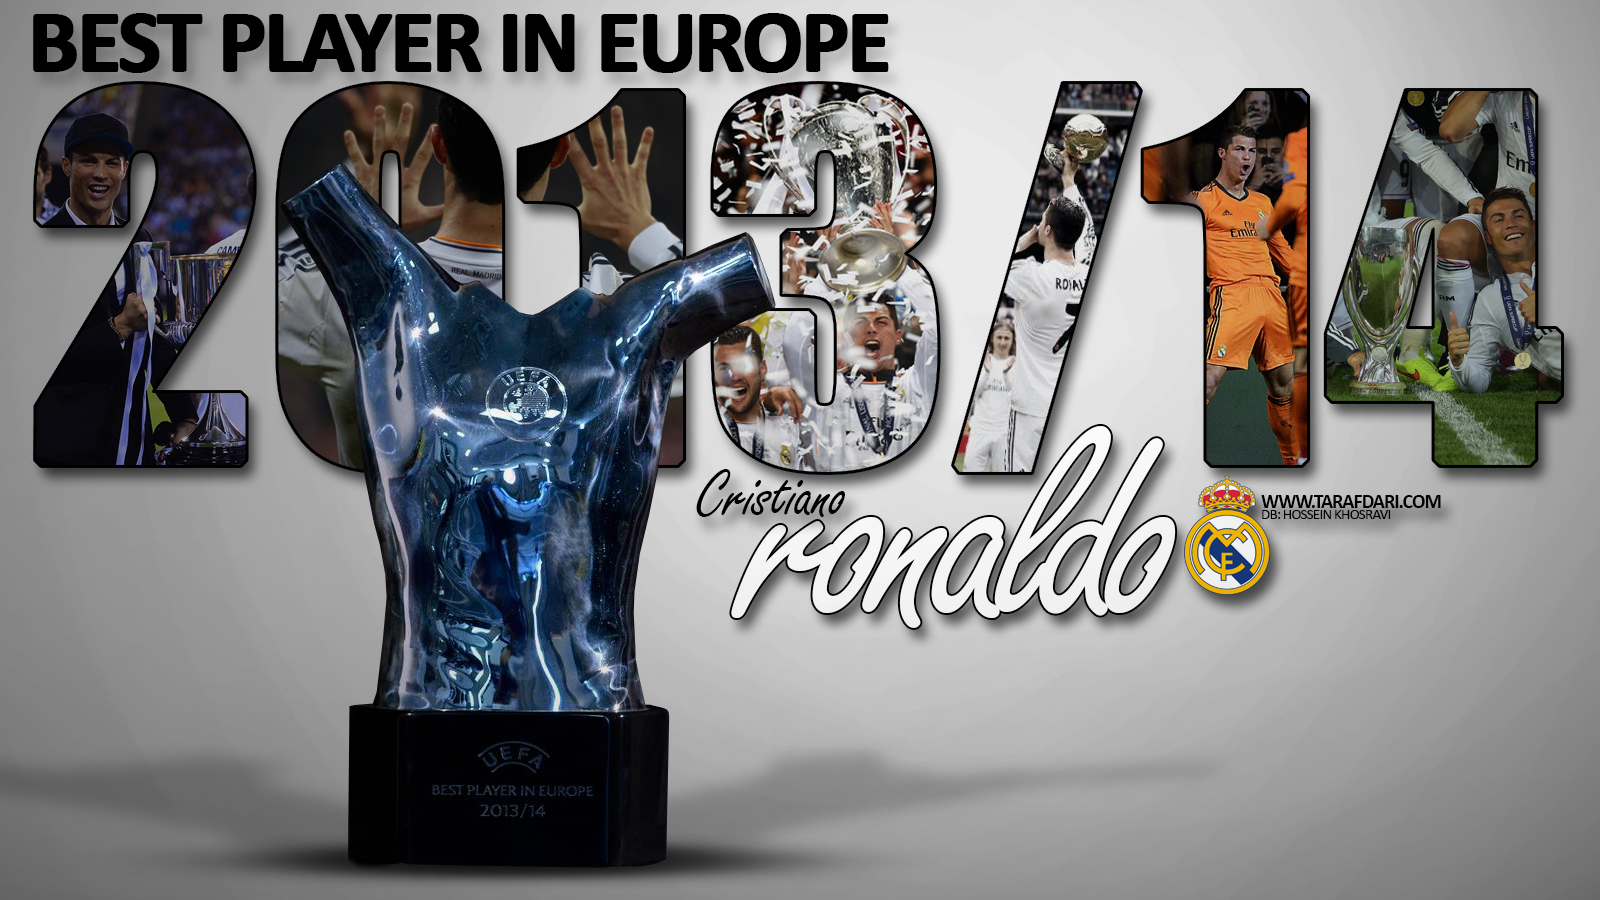 پوستر اختصاصی طرفداری: کریستیانو رونالدو بازیکن سال فوتبال اروپا